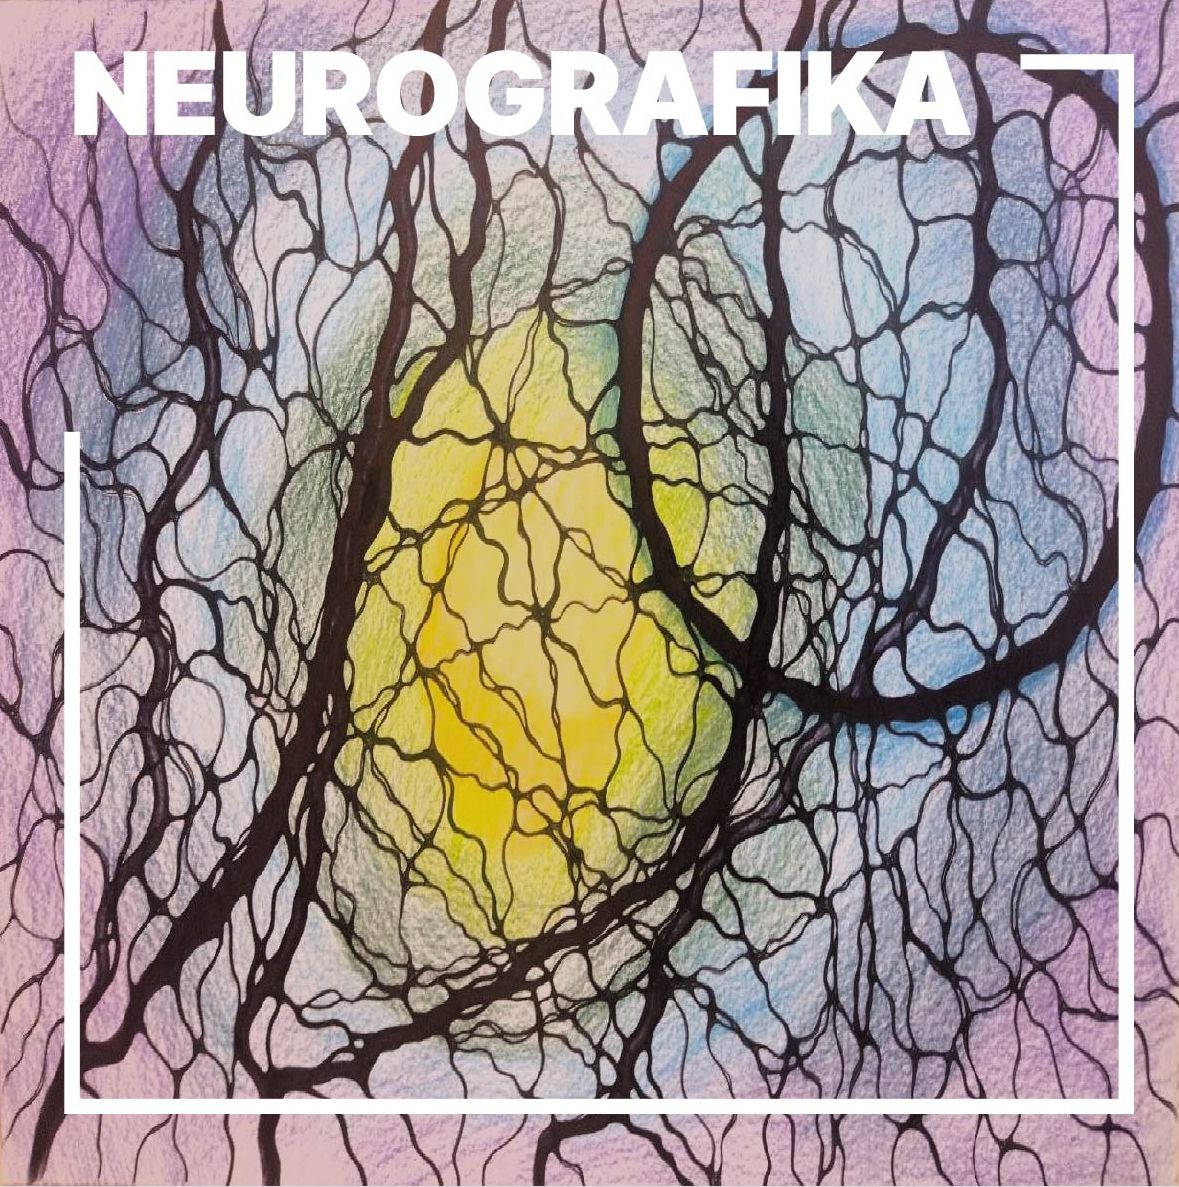 Neurografika